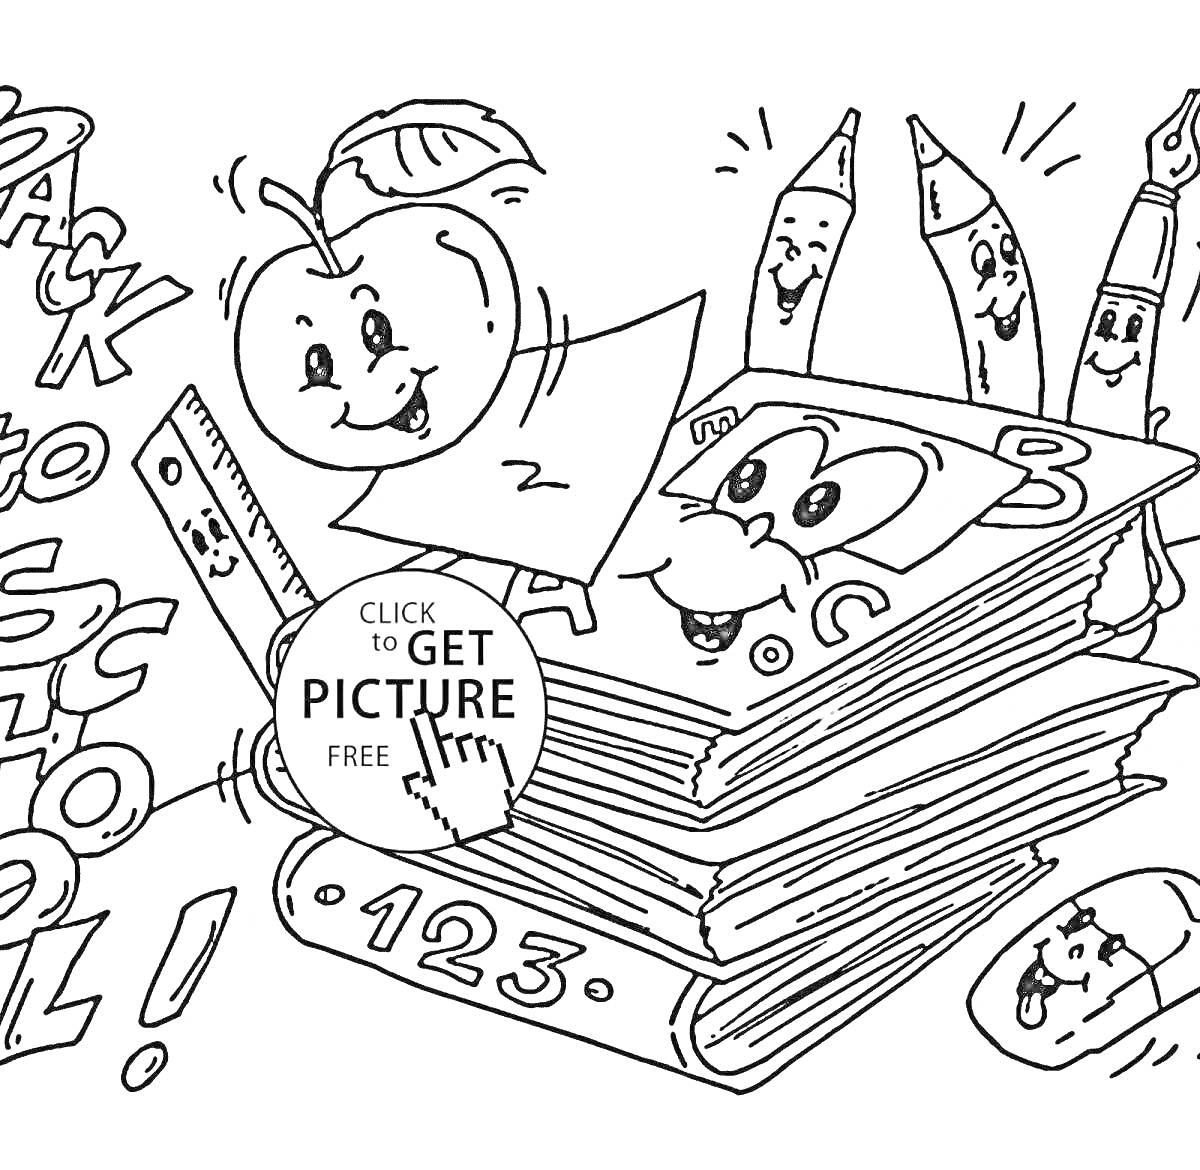 Раскраска Школьные принадлежности будущего: яблоко с лицом, линейка, остроконечный карандаш, четыре карандаша с лицами, несколько книг с лицом, слова 